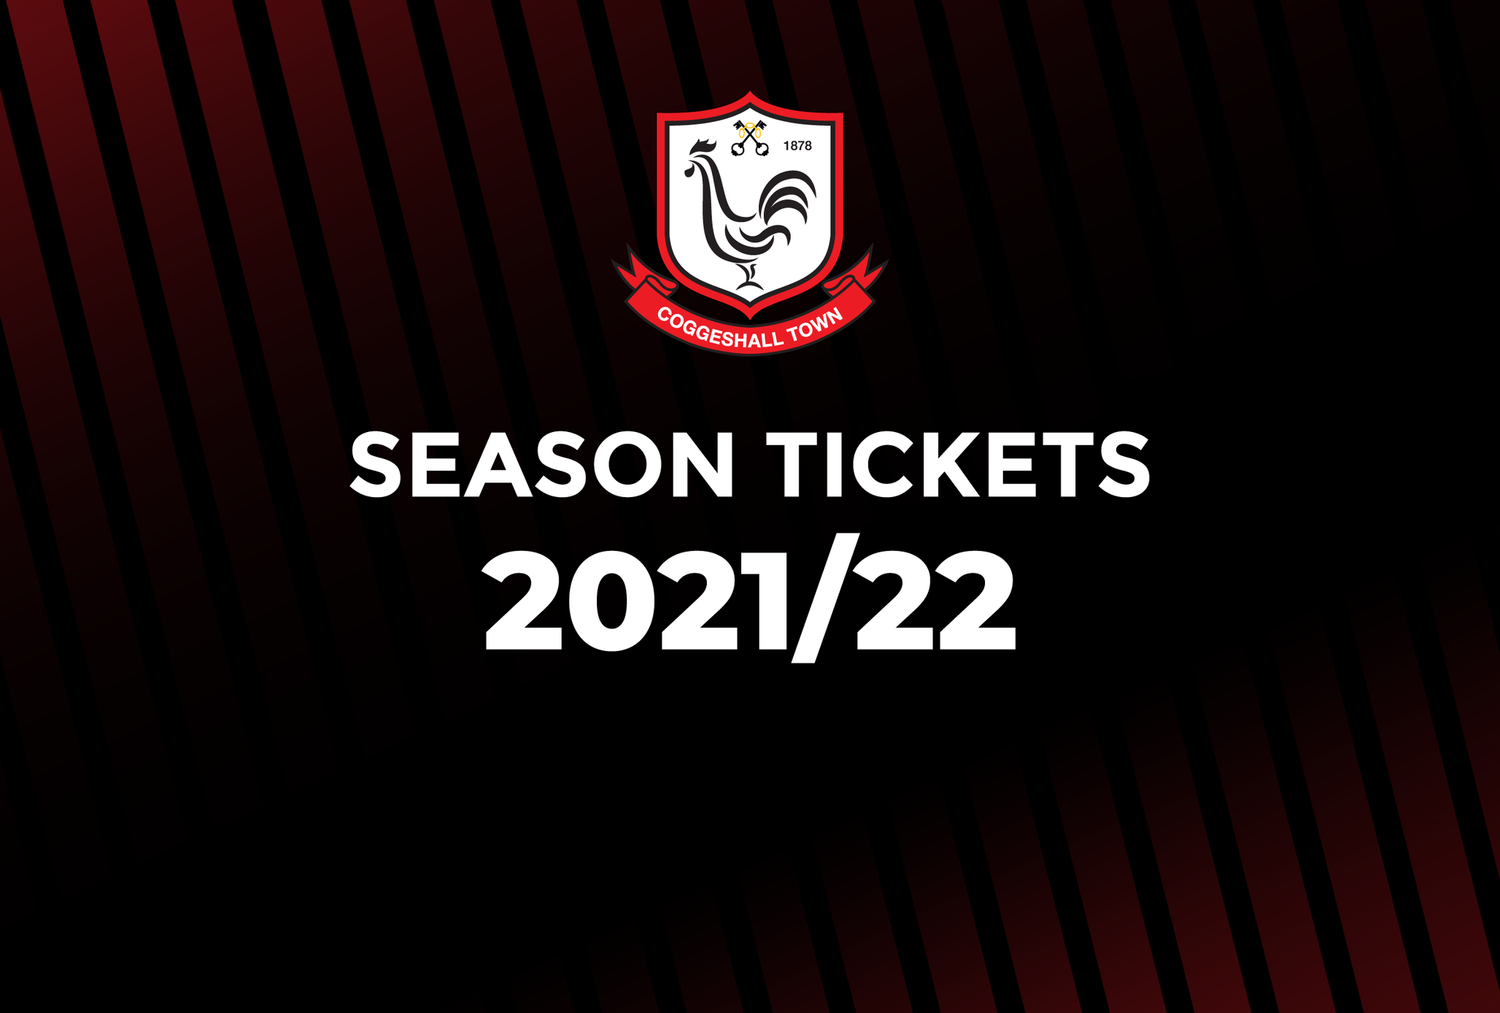 Season Tickets 2021/22